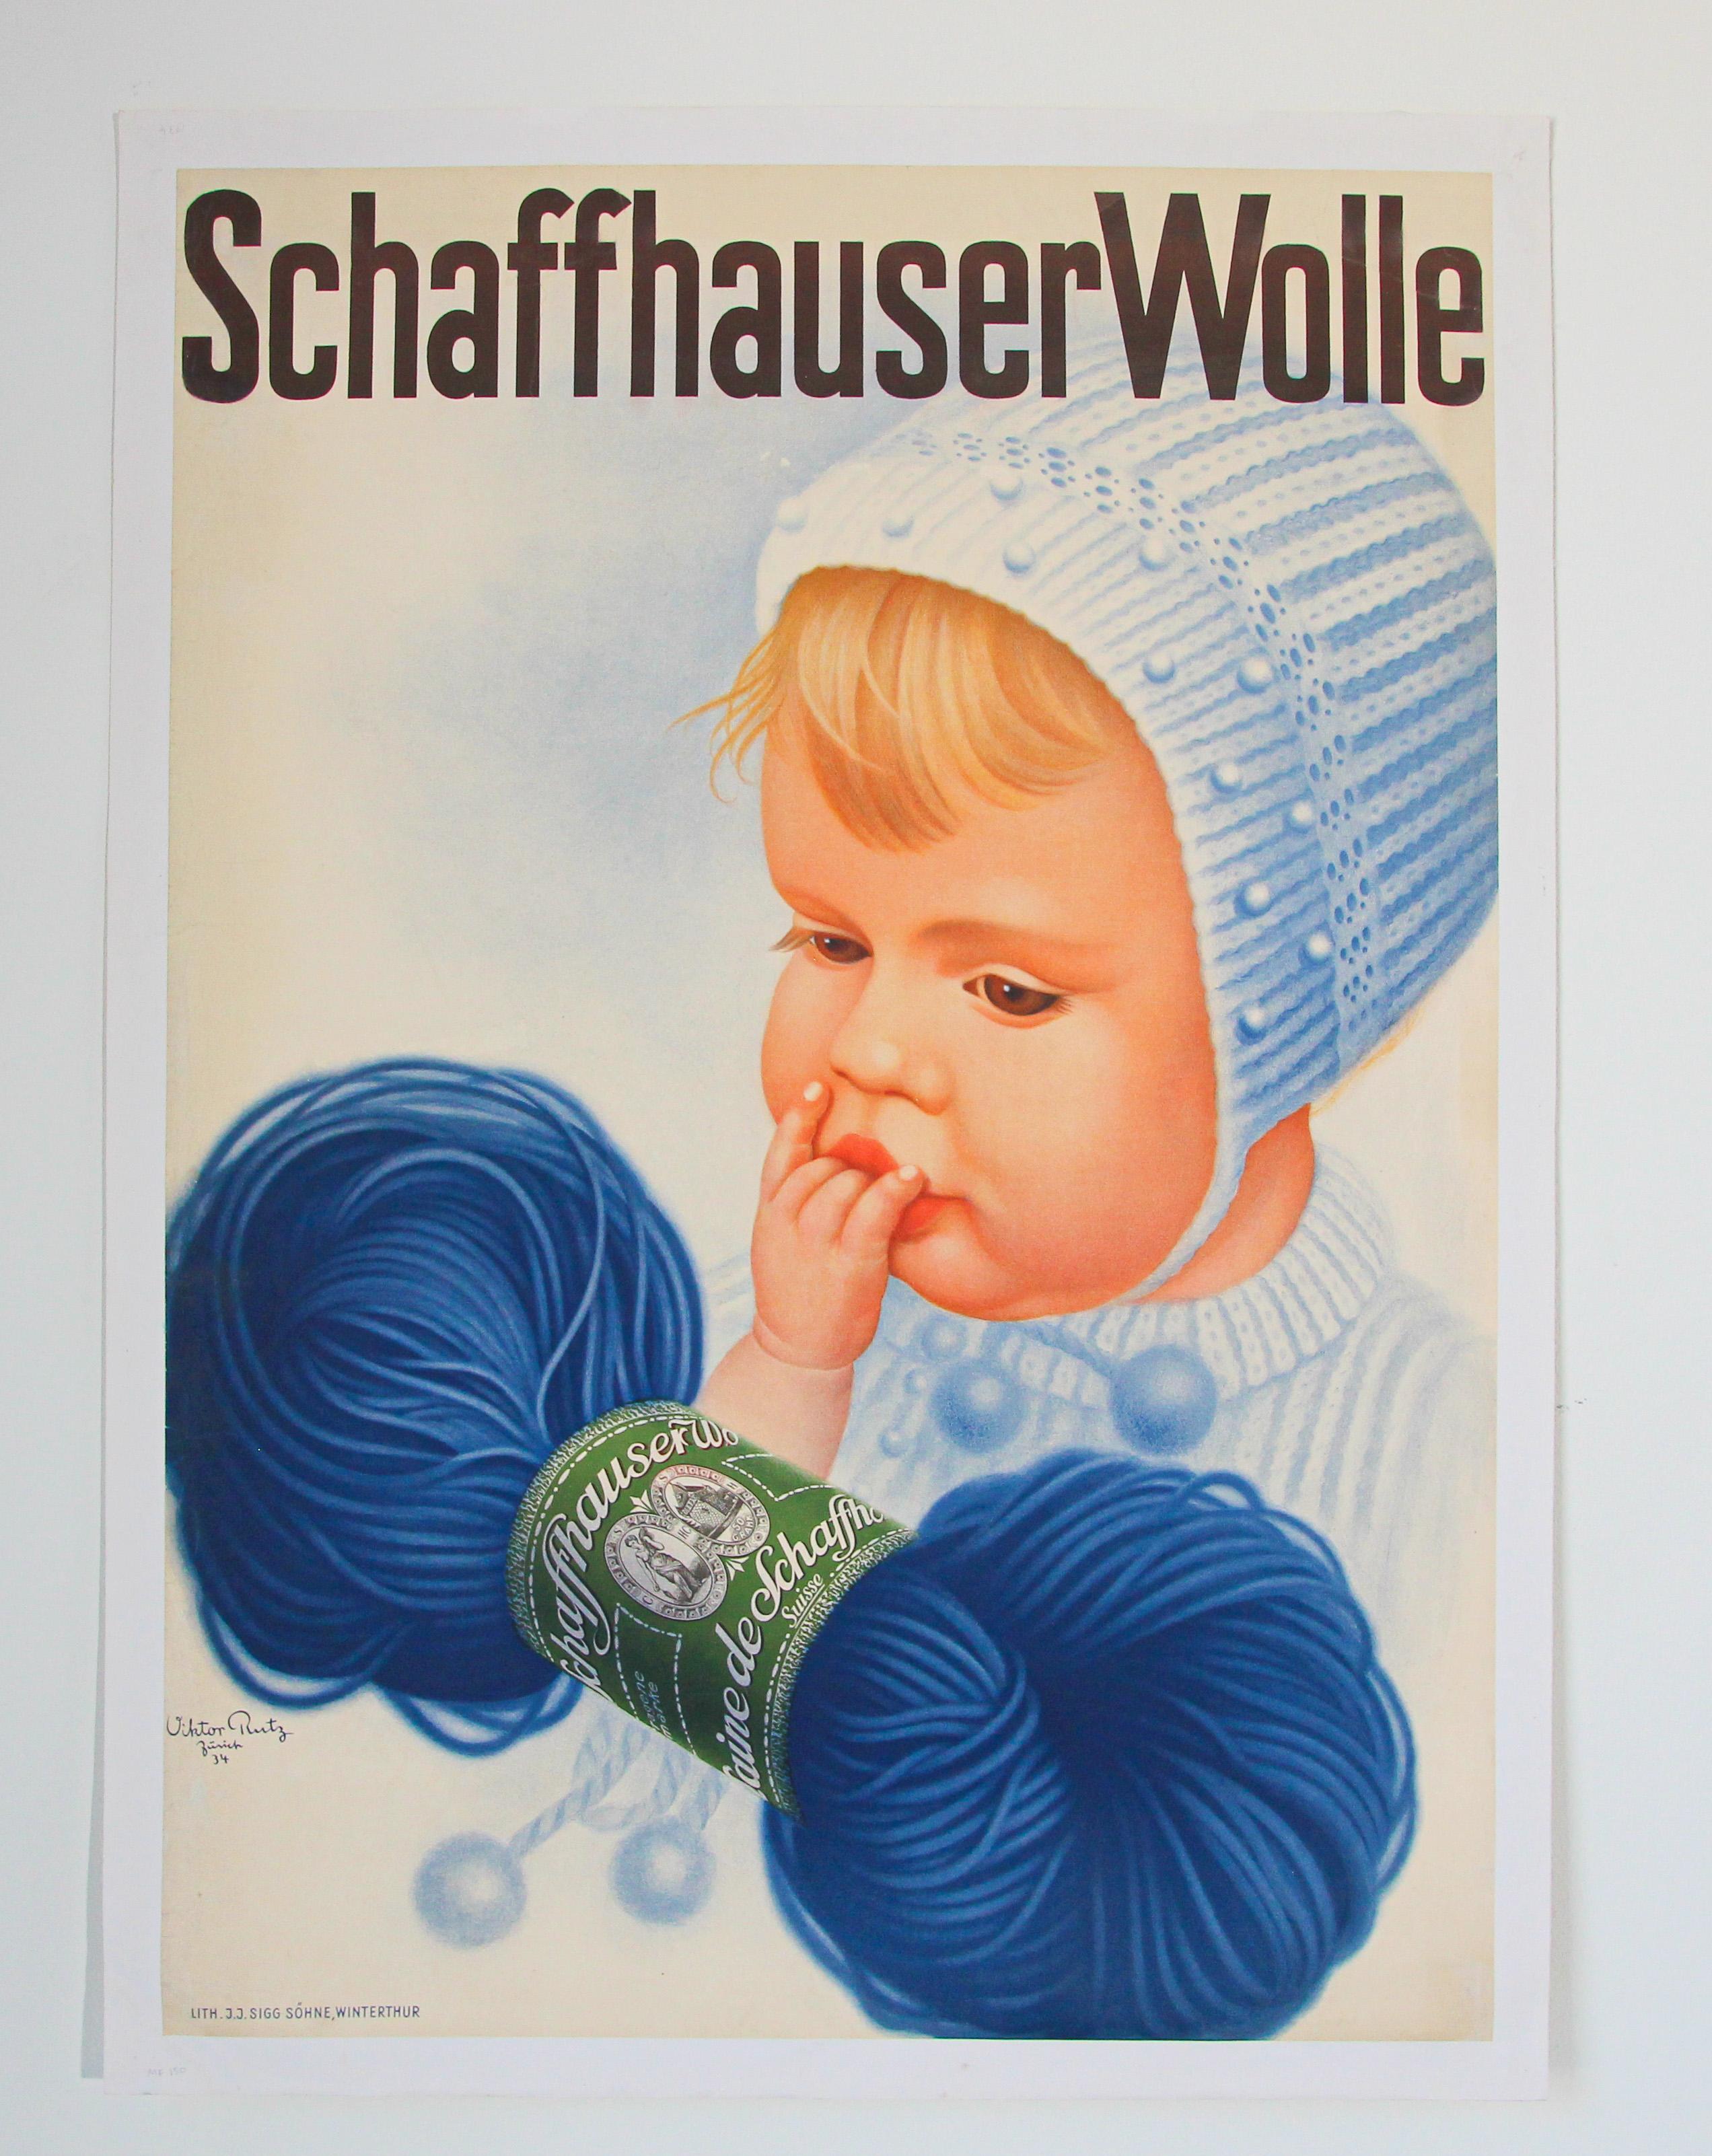 Original Vintage Poster Swiss Schaffhauser Wolle Wool Yarn Knitting 1935 Baby.
Il s'agit d'une 1ère impression originale de cette affiche de Viktor Rutz Zurich.
Imprimé en 1935, il a été créé pour faire la publicité de Schaffhauser Wolle.
Affiche